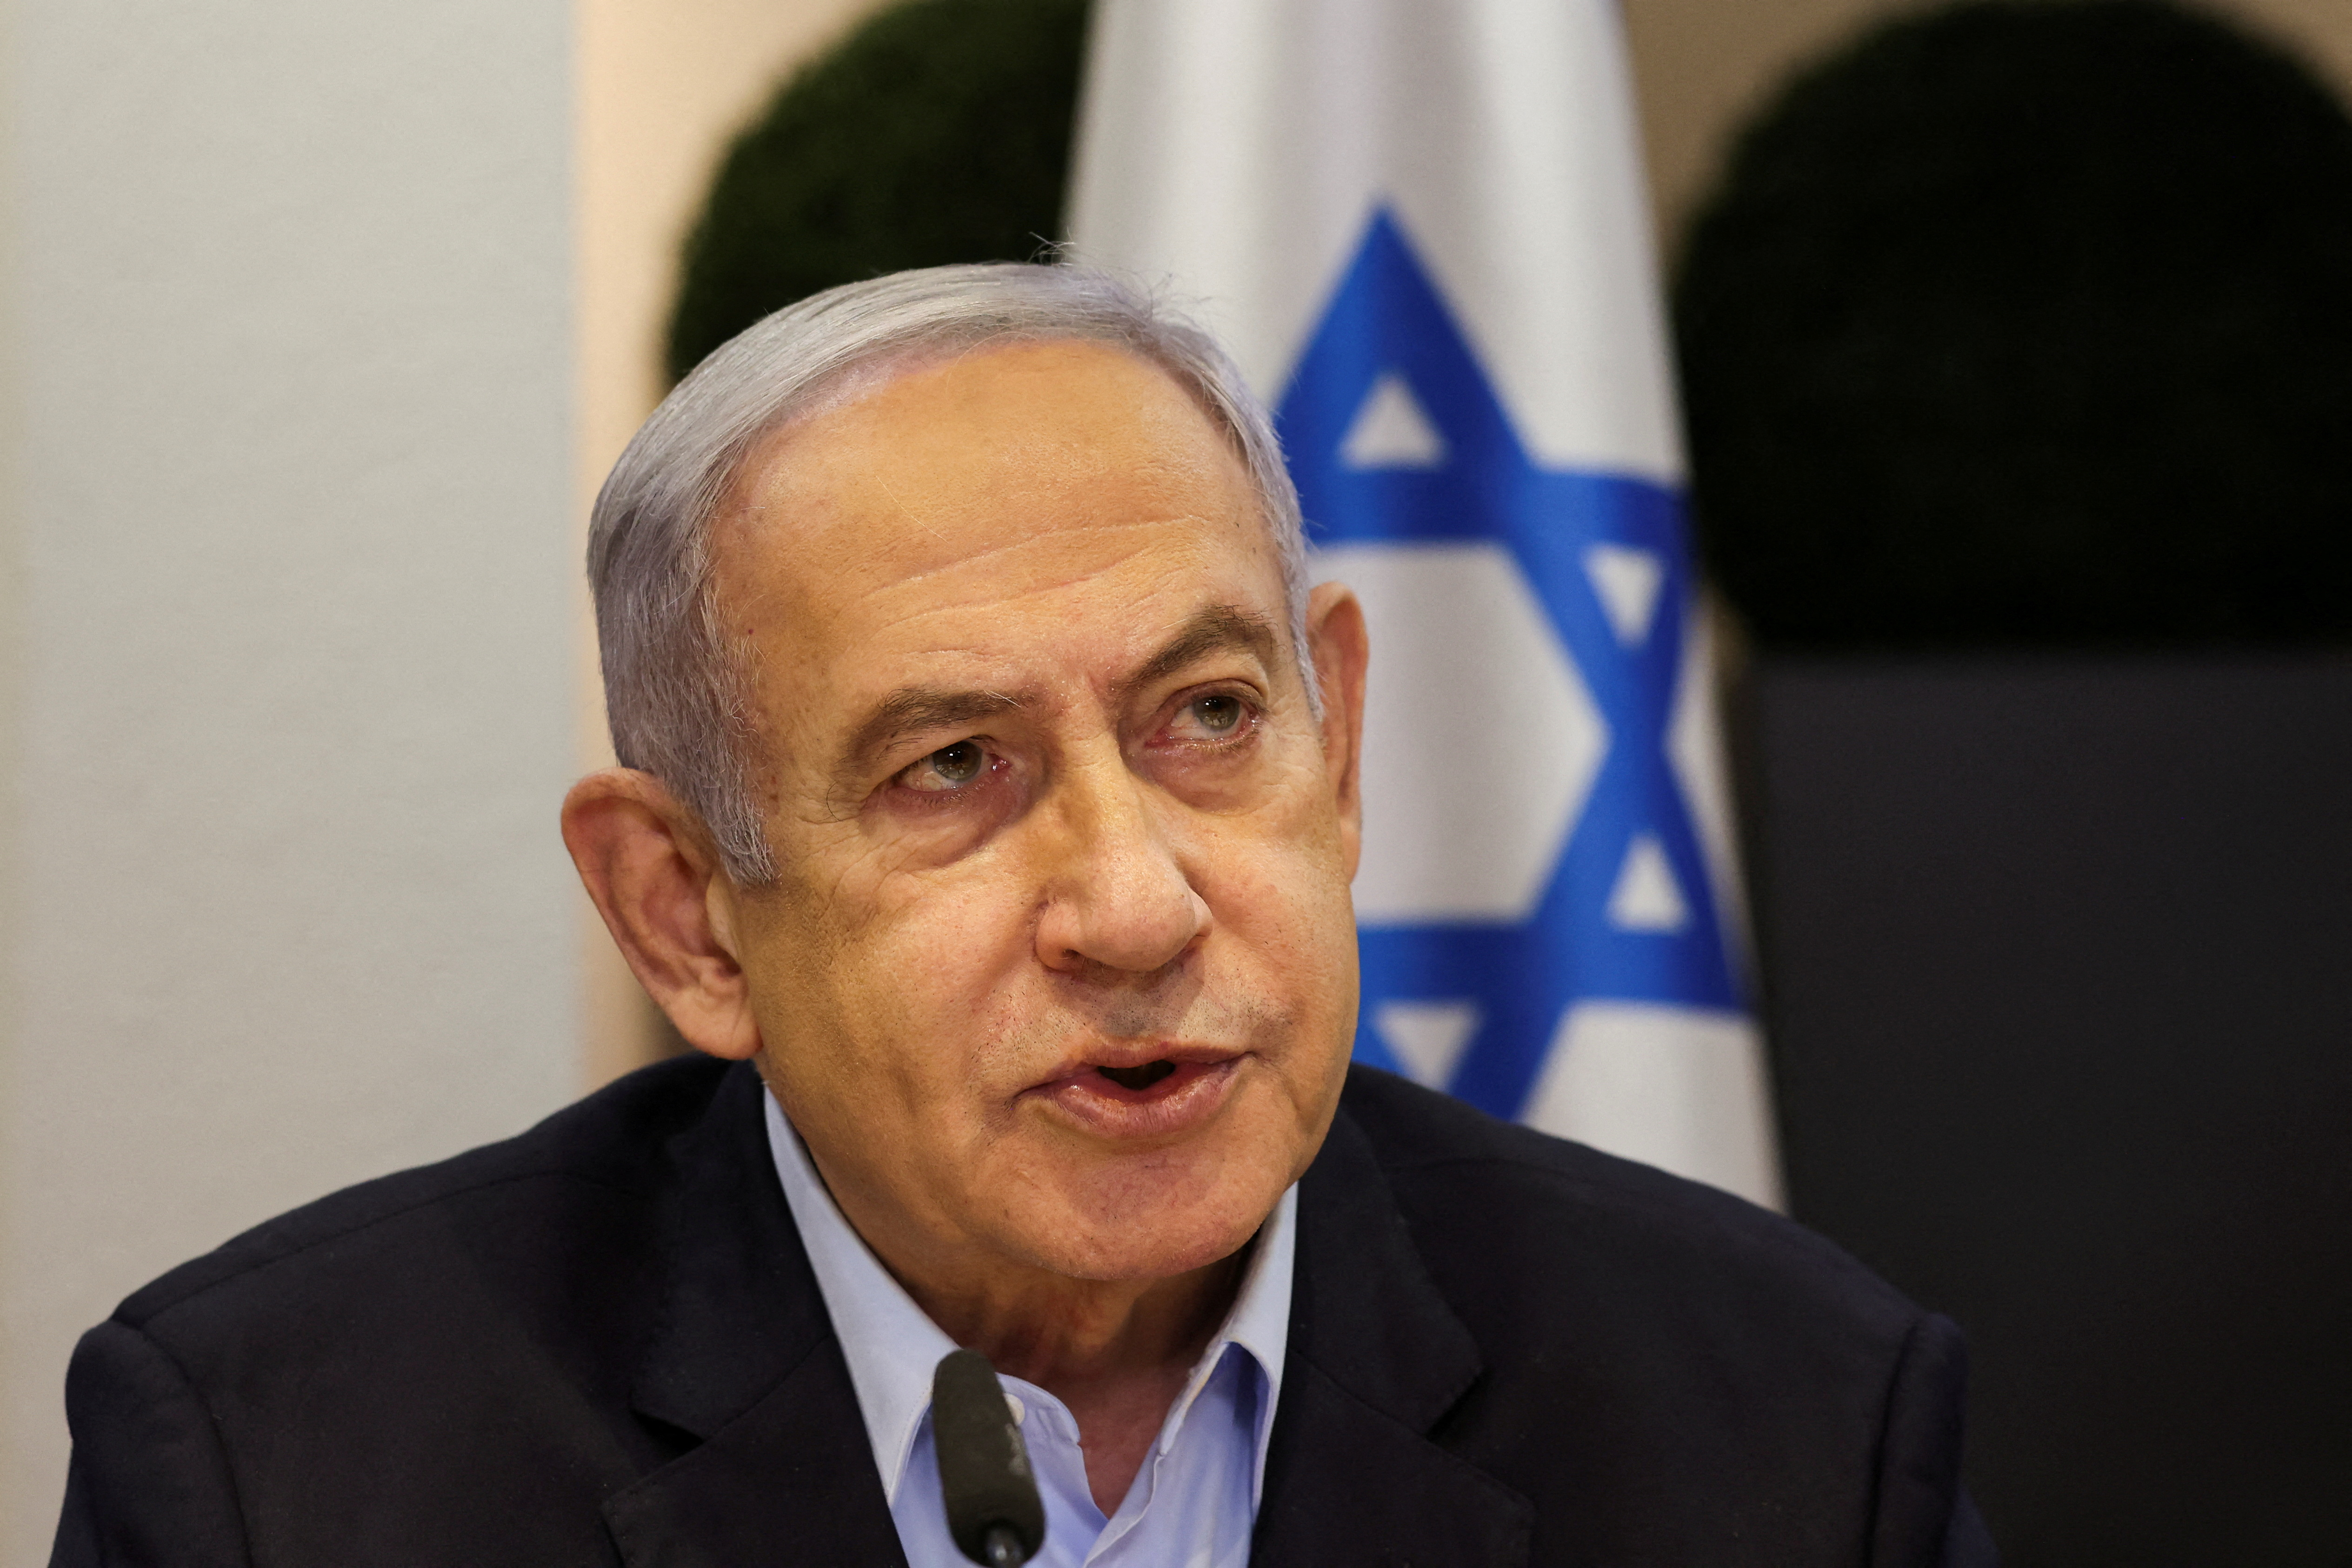 Der israelische Premierminister Benjamin Netanyahu sagte, der Luftangriff auf Helfer sei „unbeabsichtigt“ gewesen.